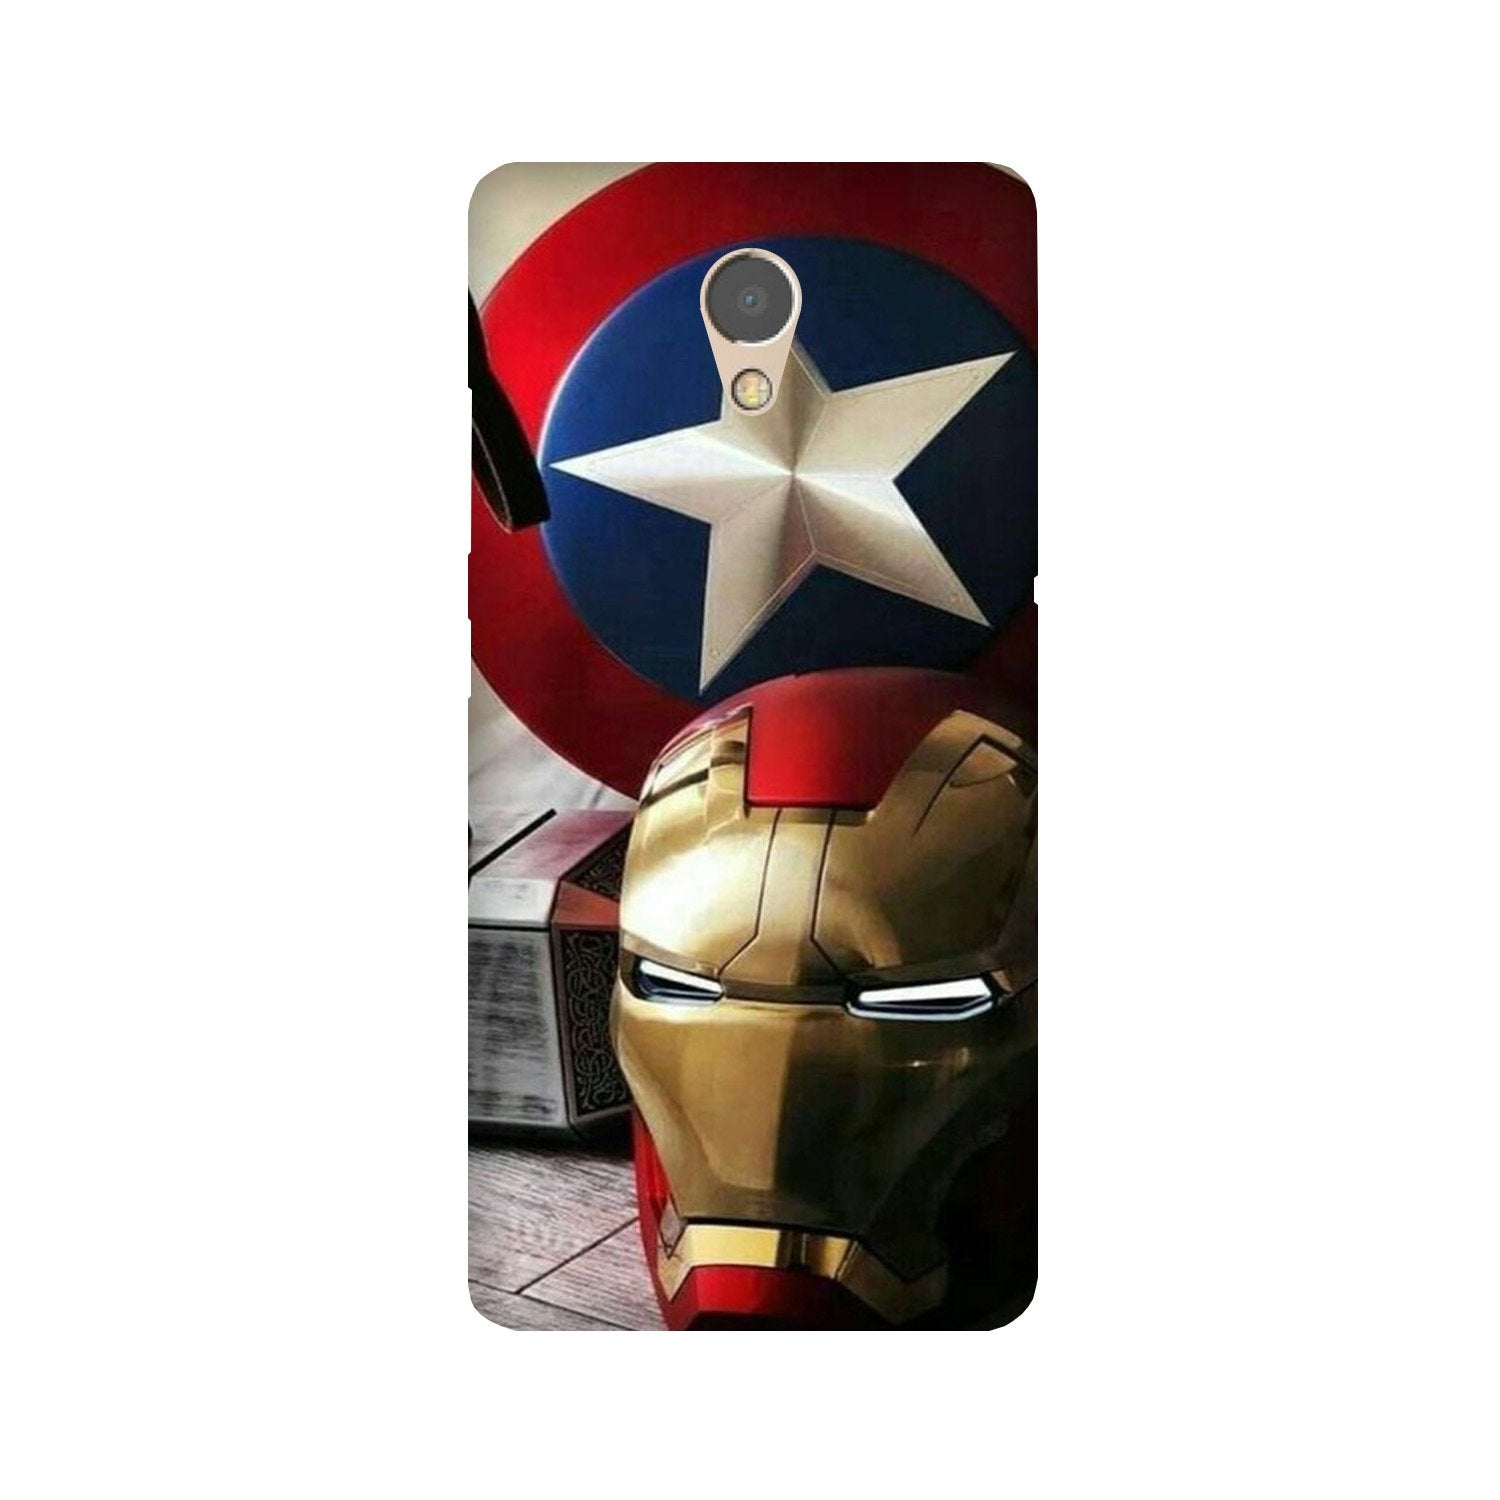 Ironman Captain America Case for Lenovo P2 (Design No. 254)